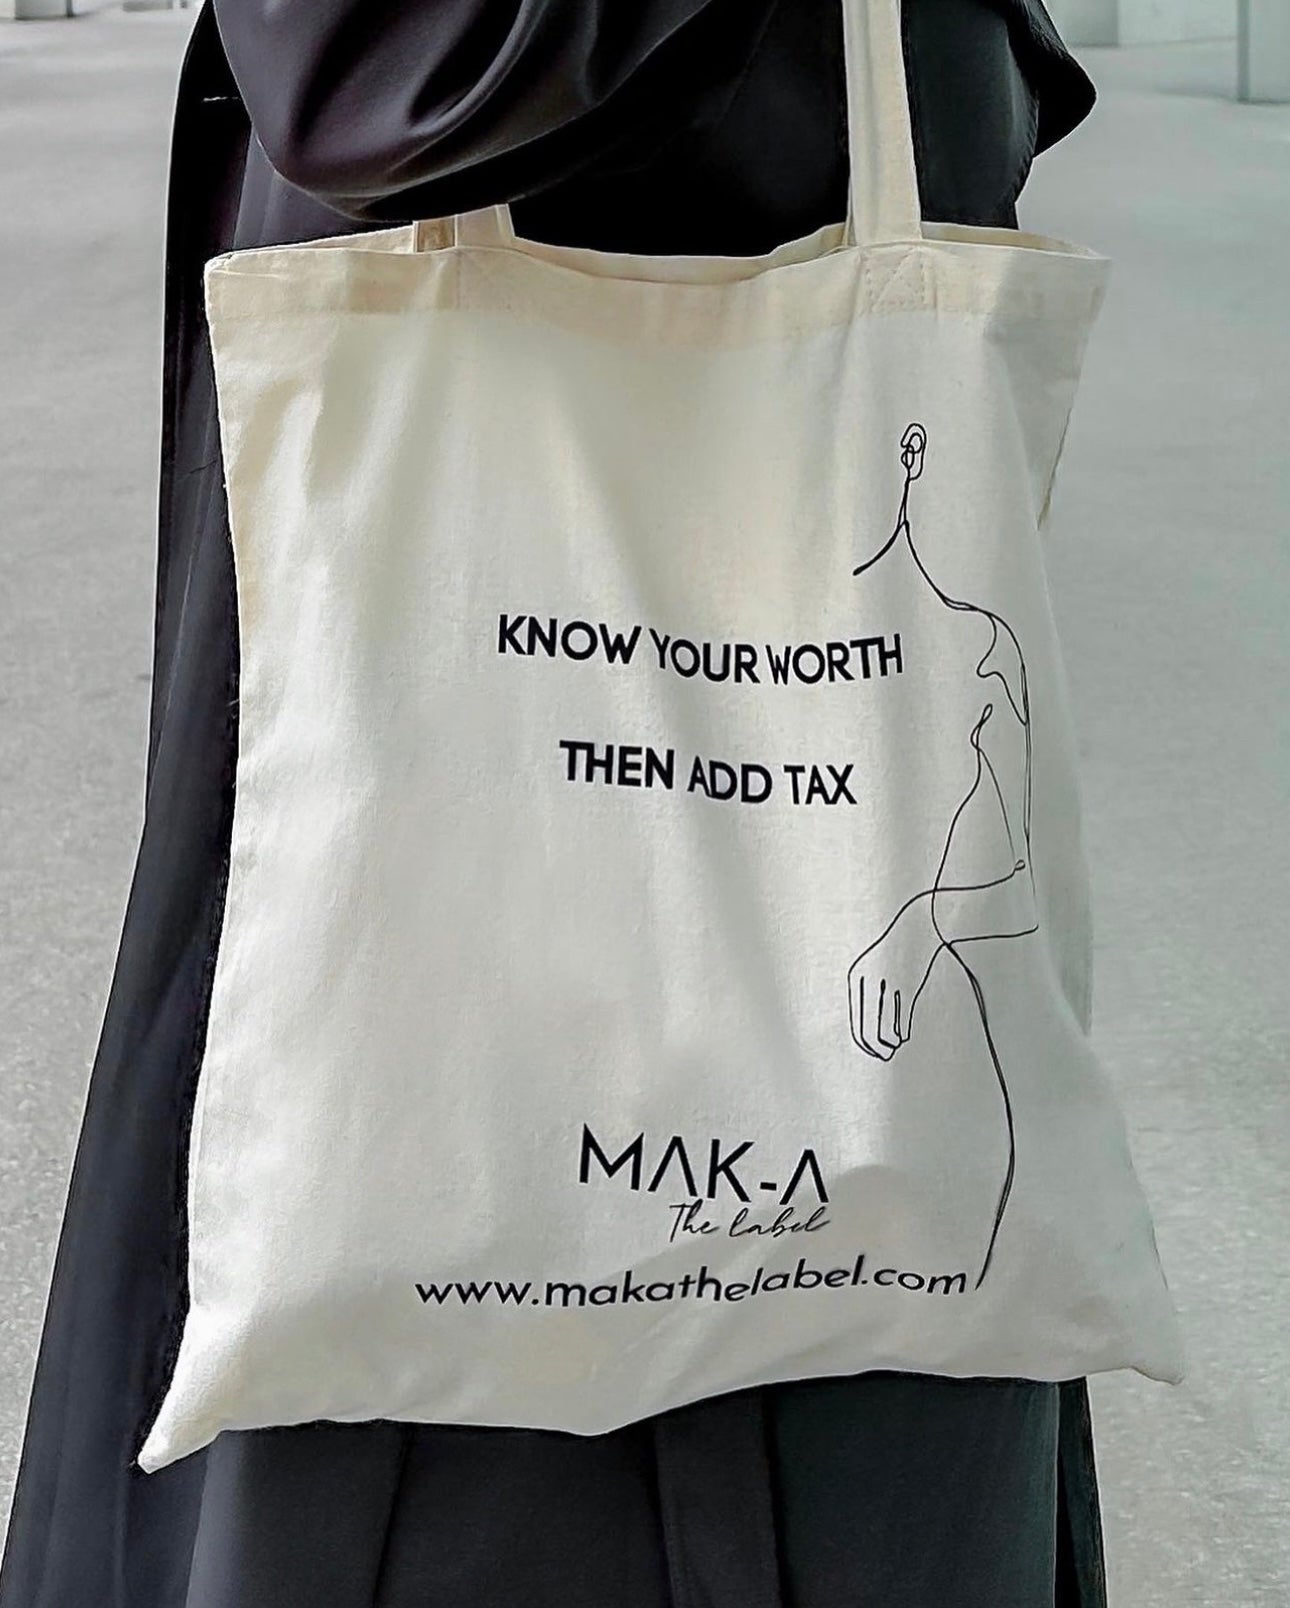 MAK-A tote bag